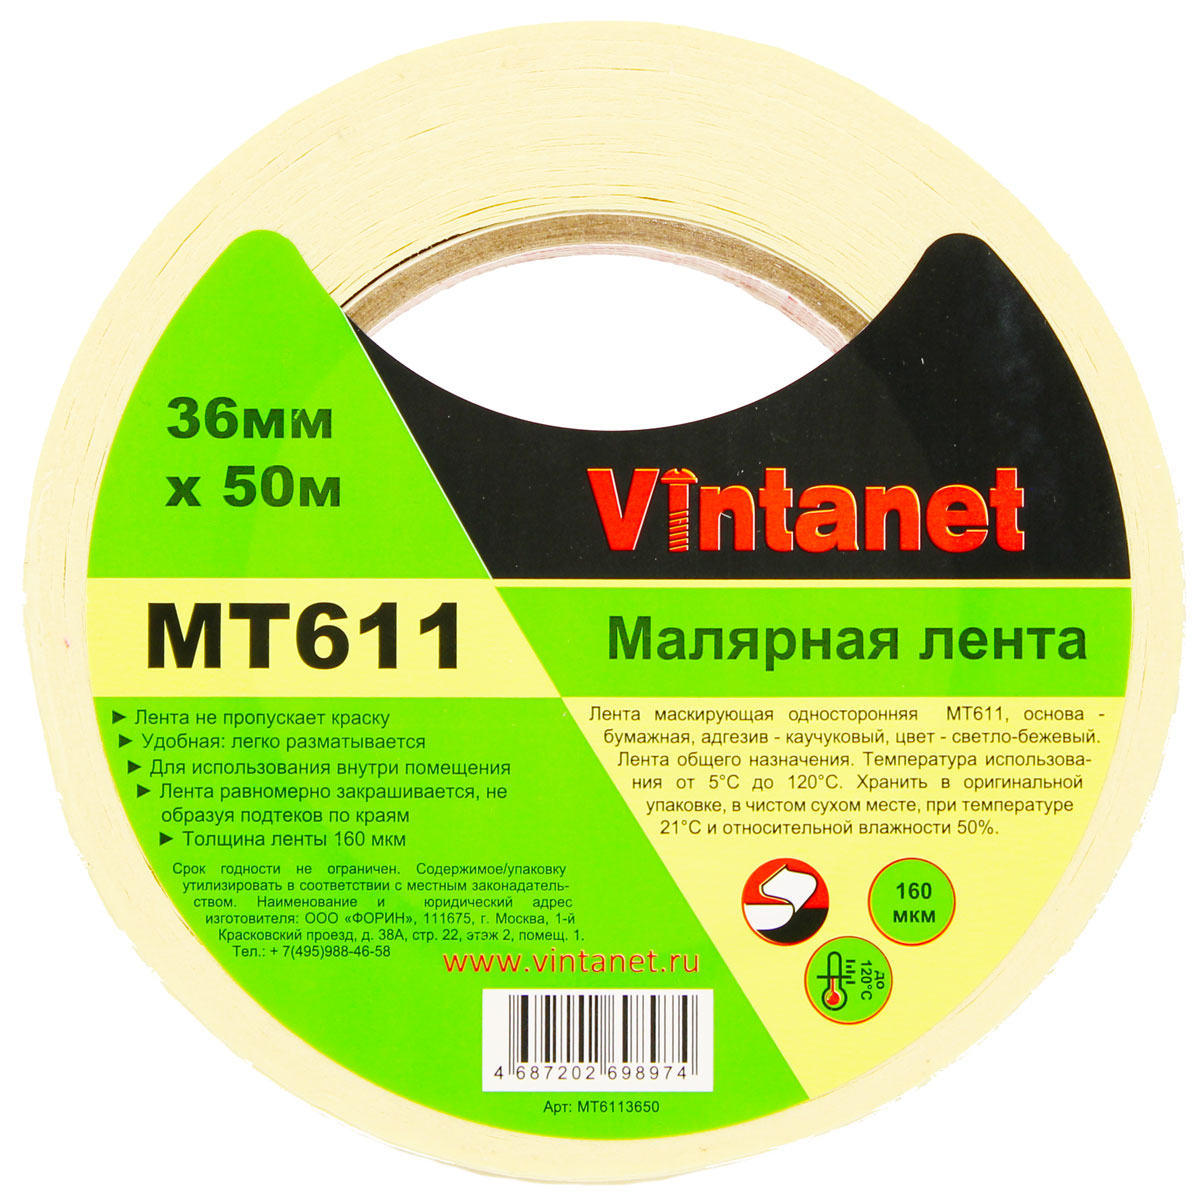 Лента малярная высокотемпературная Vintanet MT611, 120 С, 160 мкм, 36мм х 50м, MT6113650 малярная лента для деликатных поверхностей rollingdog